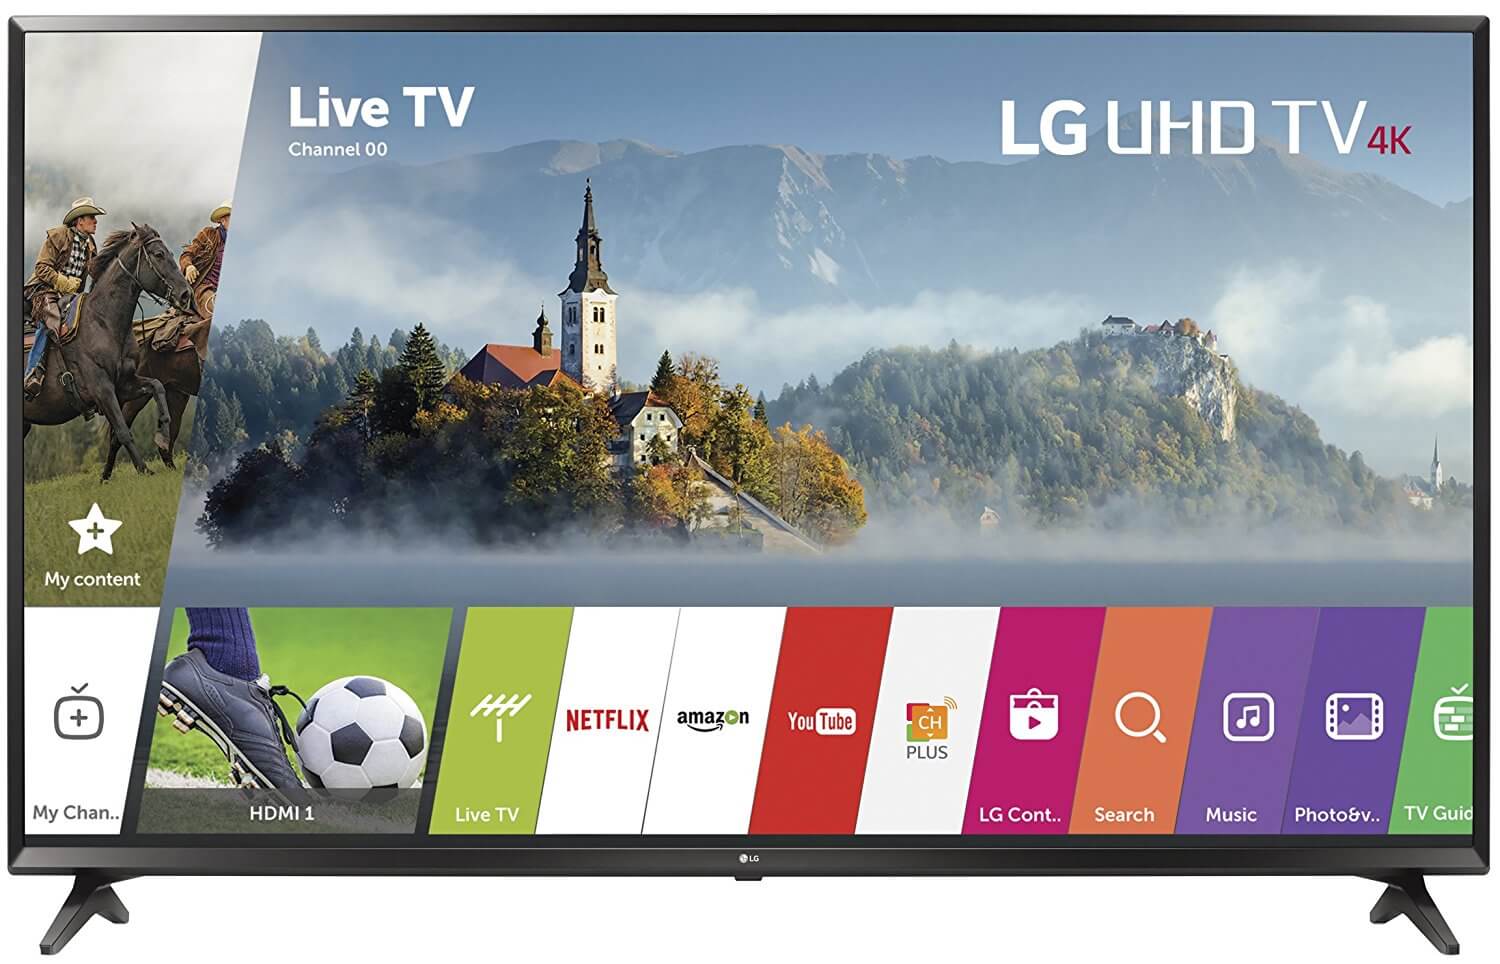 LG 55UJ6300 55-Inch 4K Ultra HD Smart LED TV